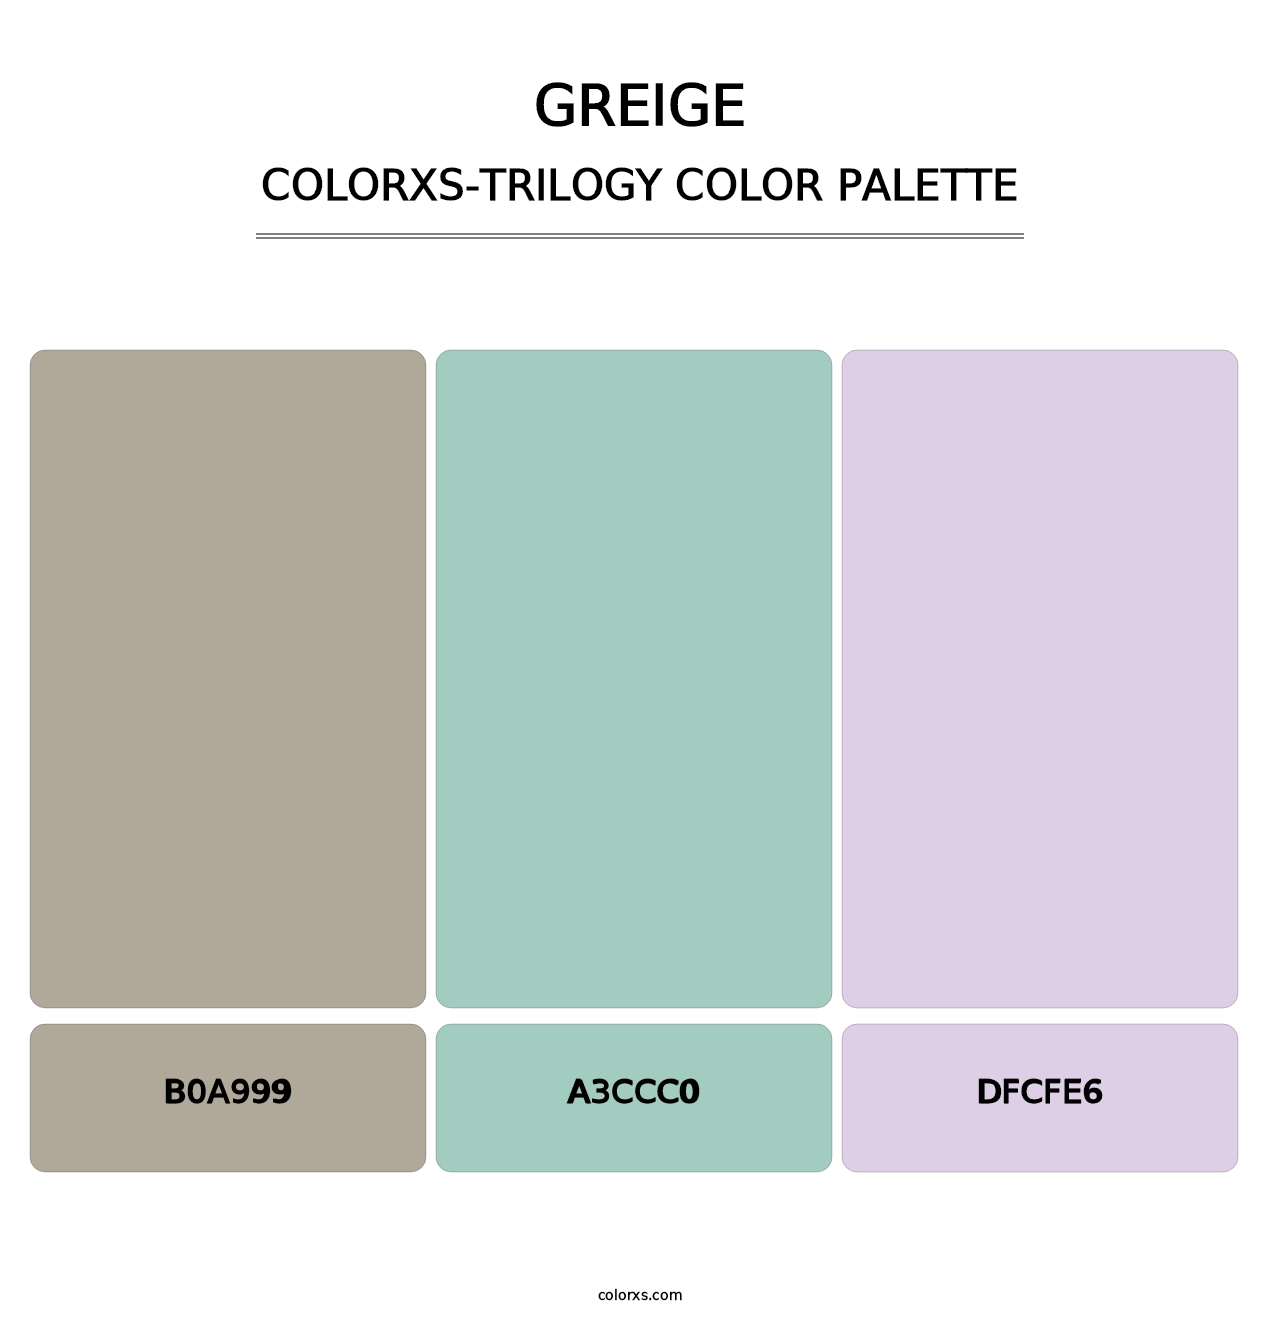 Greige - Colorxs Trilogy Palette